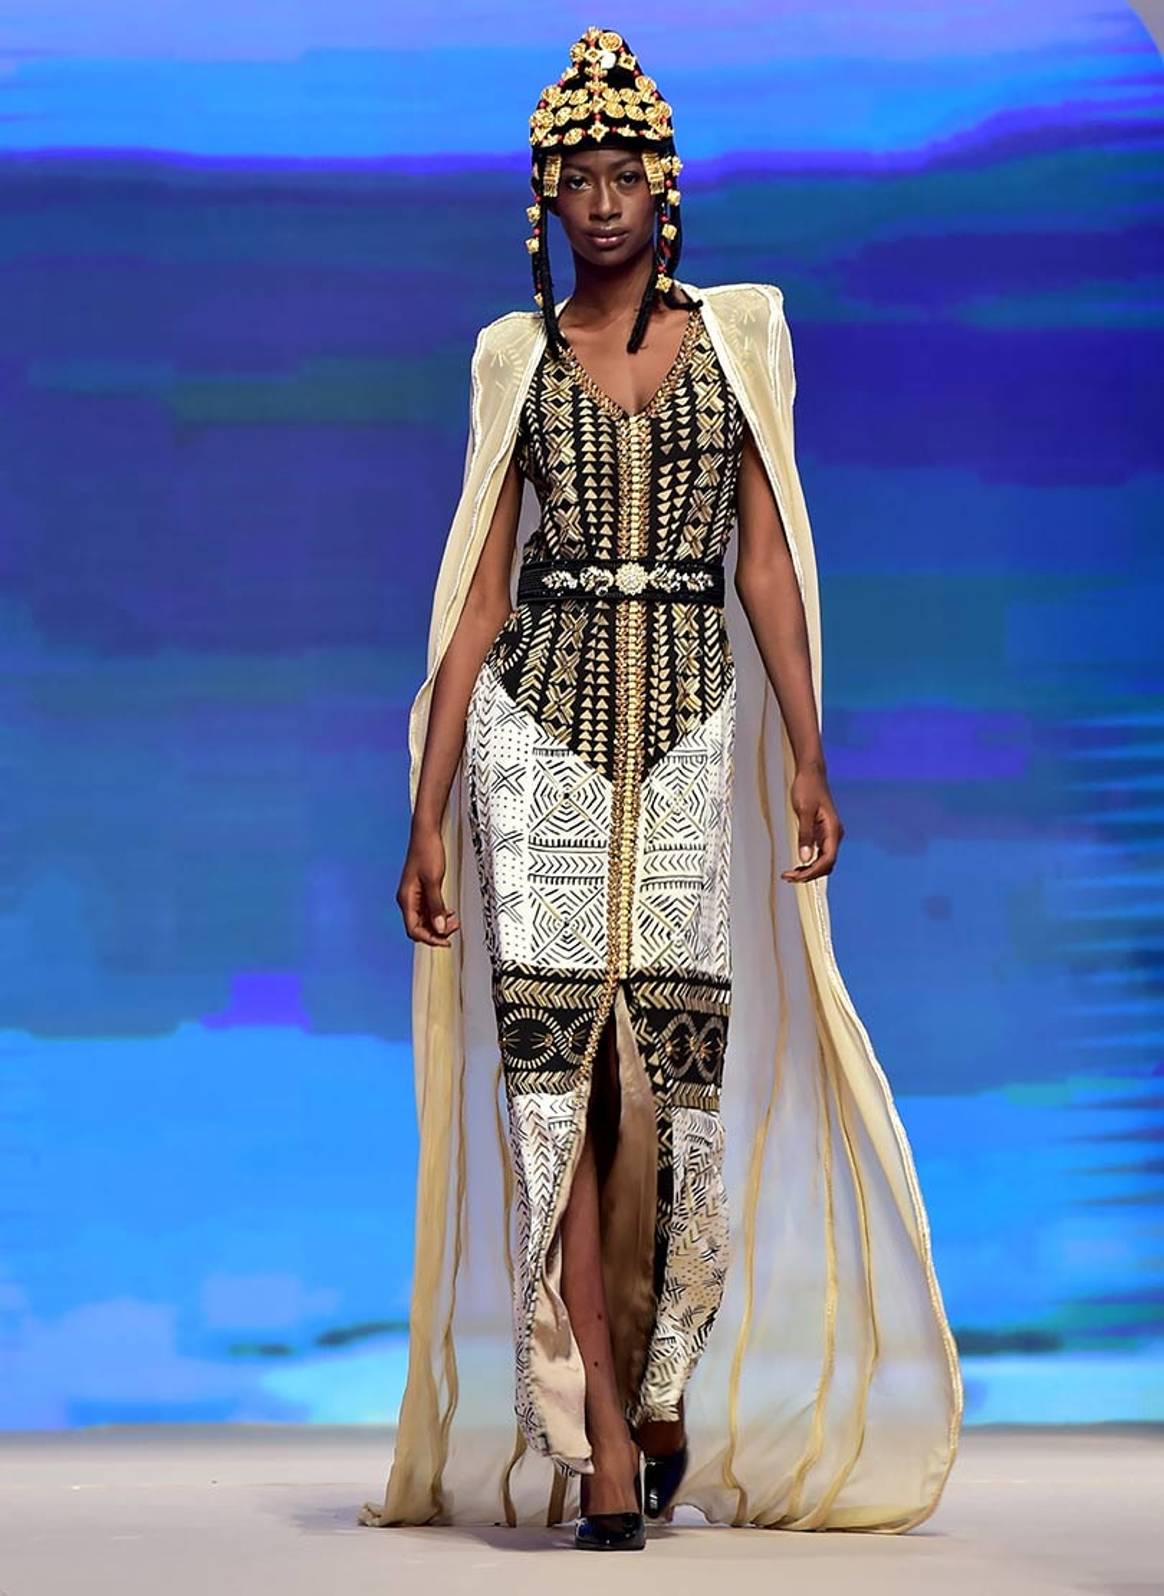 FIMA: La mode africaine envisage de créer une fédération pour s’exporter plus facilement